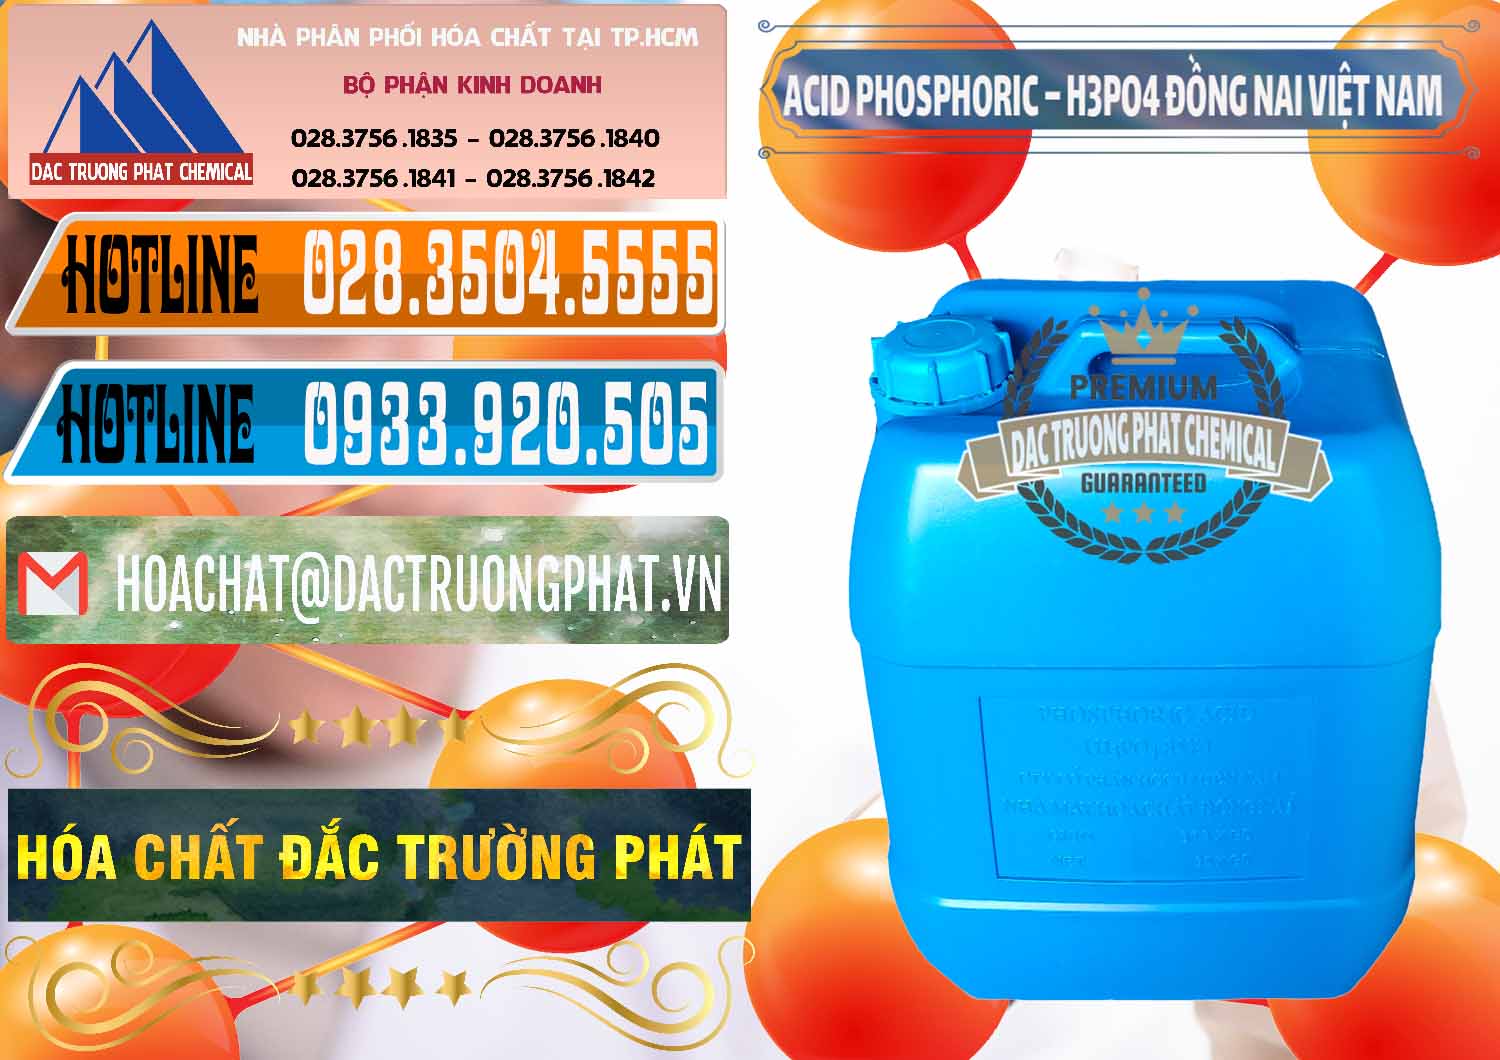 Cty phân phối - cung ứng Acid Phosphoric – Axit Phosphoric 85% Đồng Nai Việt Nam - 0183 - Đơn vị kinh doanh & cung cấp hóa chất tại TP.HCM - stmp.net